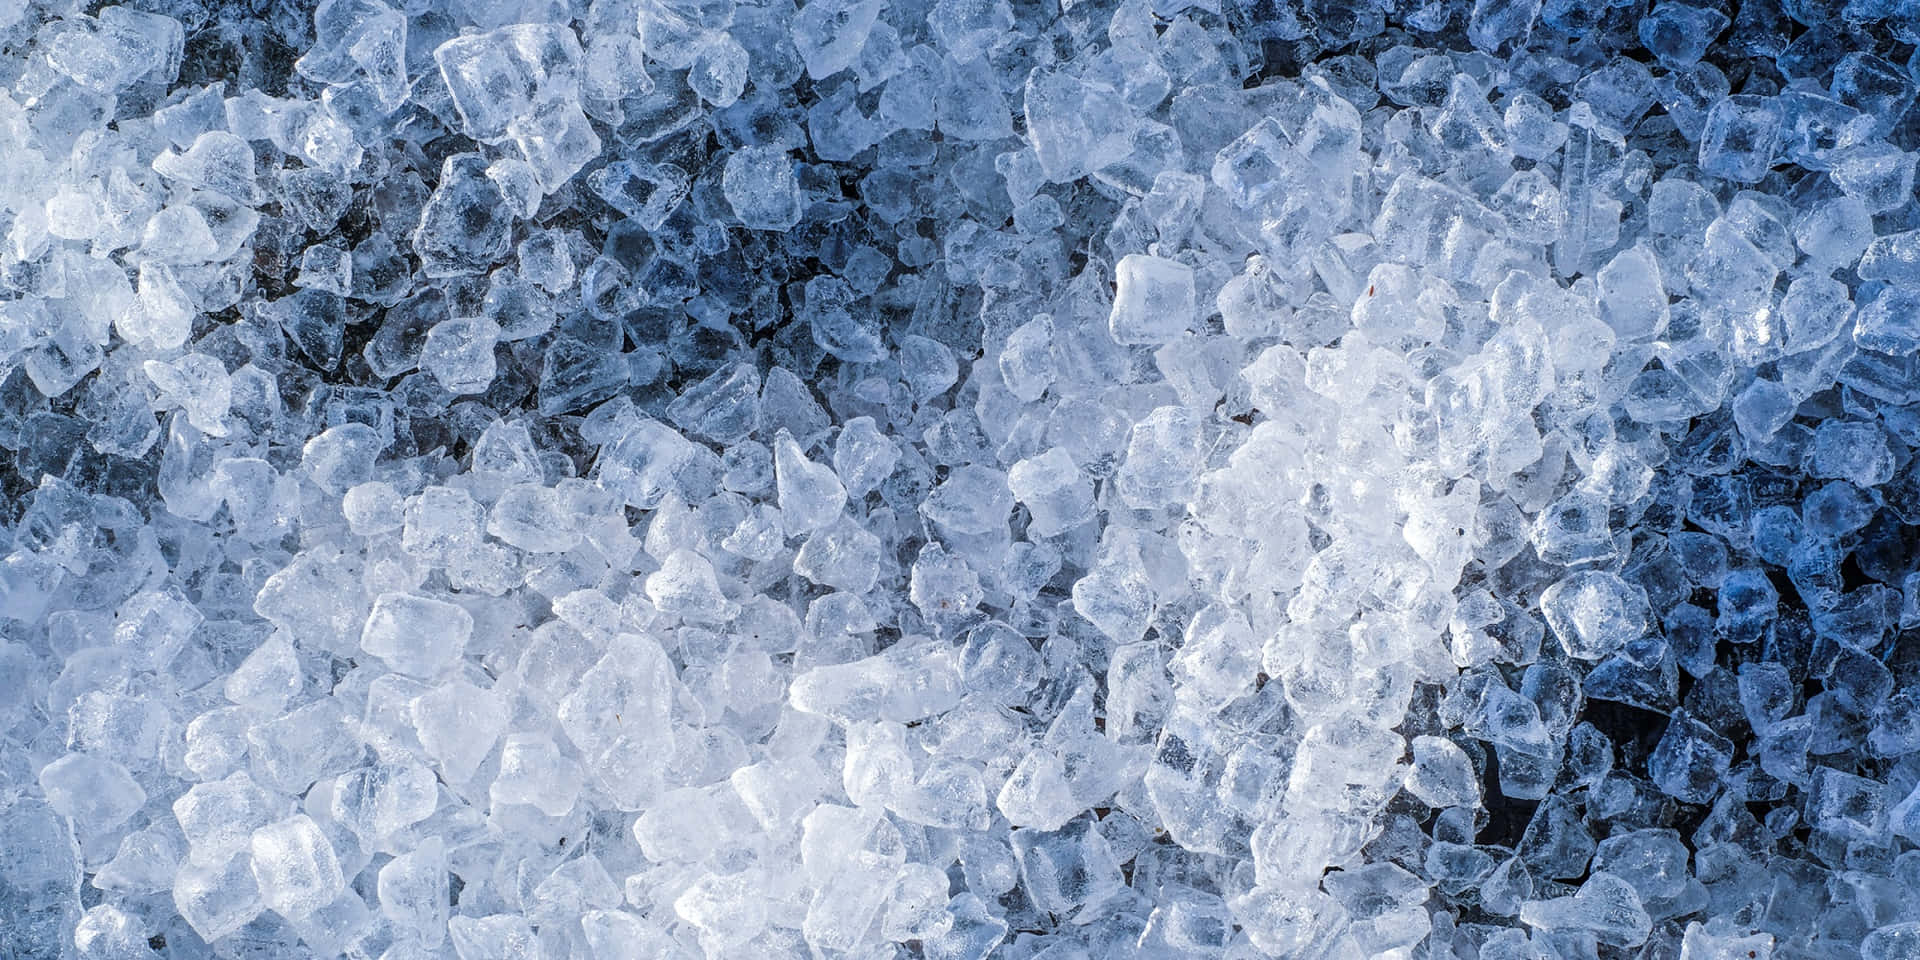 Faszinierendeblautöne Und Weißtöne Strahlen Durch Diese Eisige Winterszene.